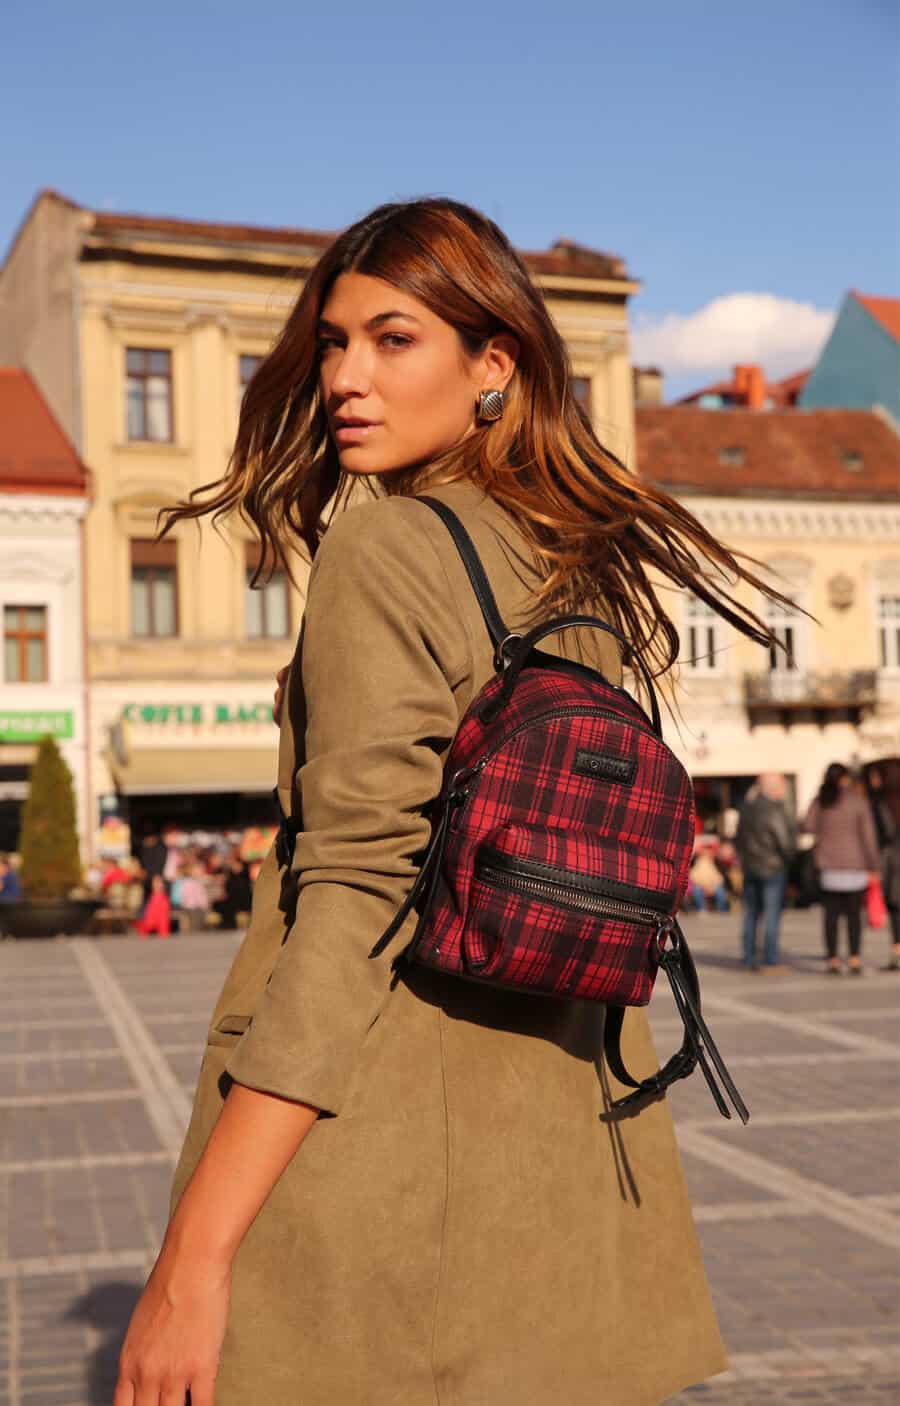 Modelo em cenário urbano usando looks com mochila junto com um casaco bege